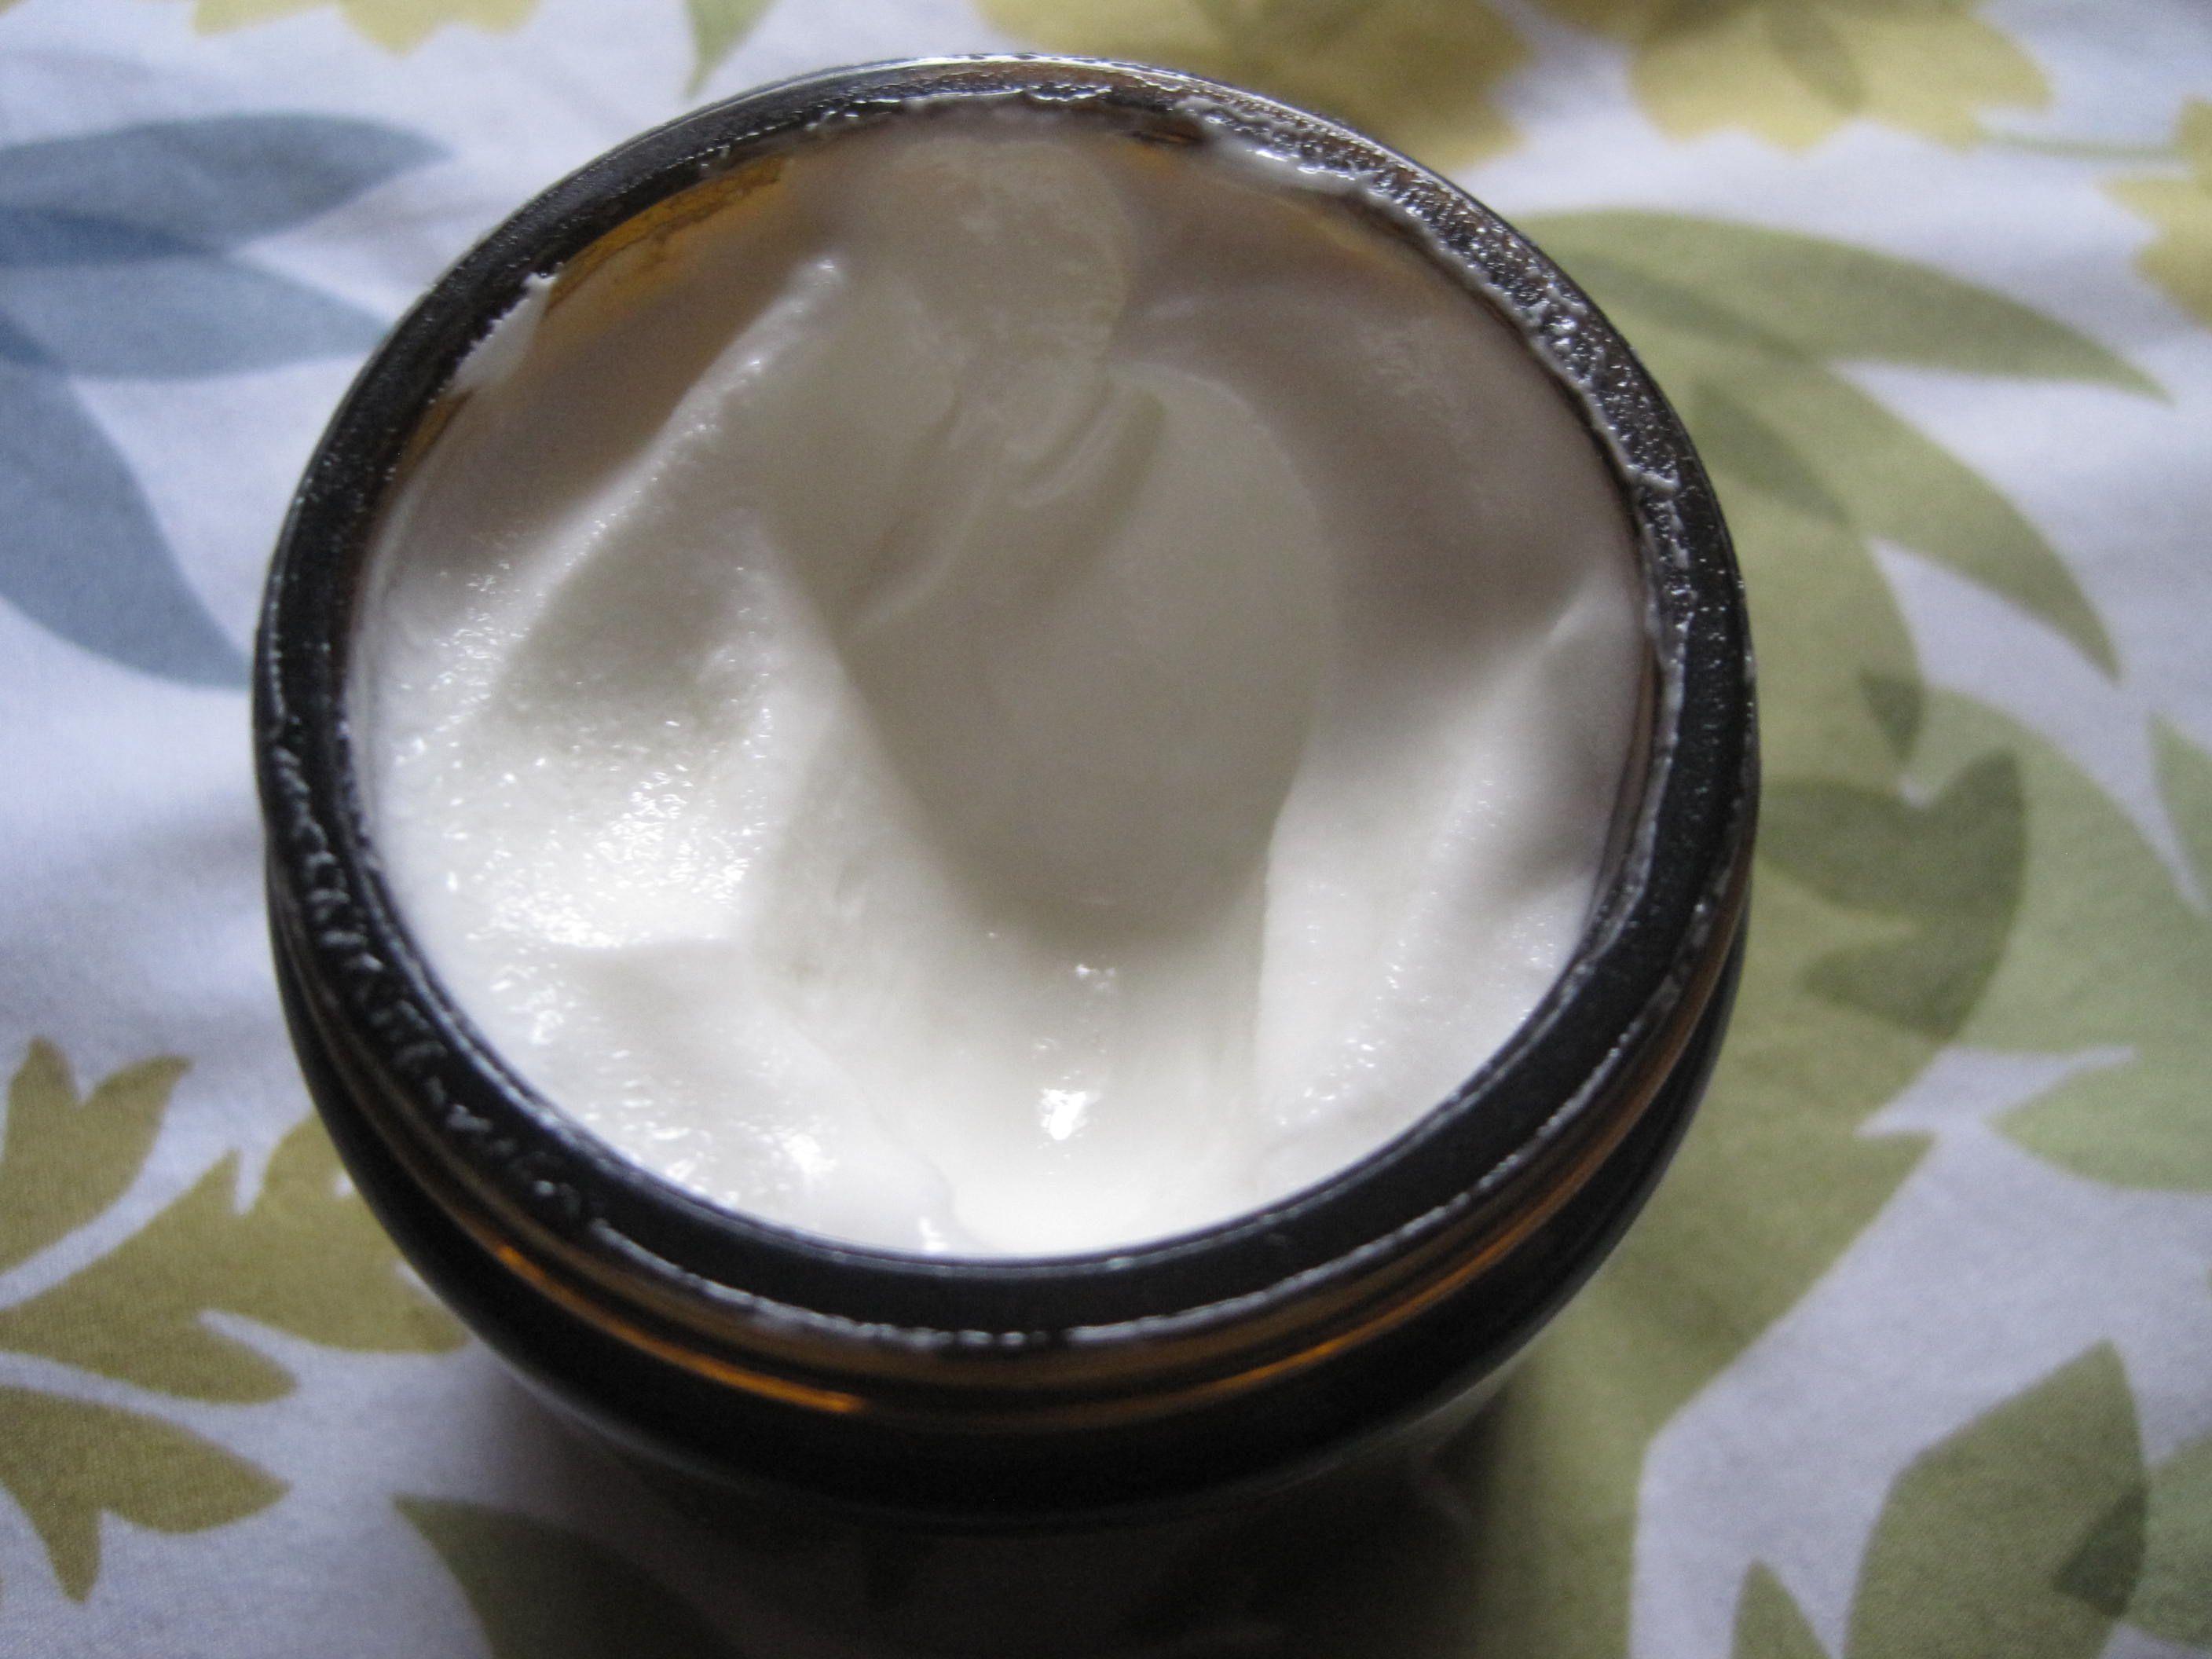 Good в. P. reccomend Natural facial cream recipe